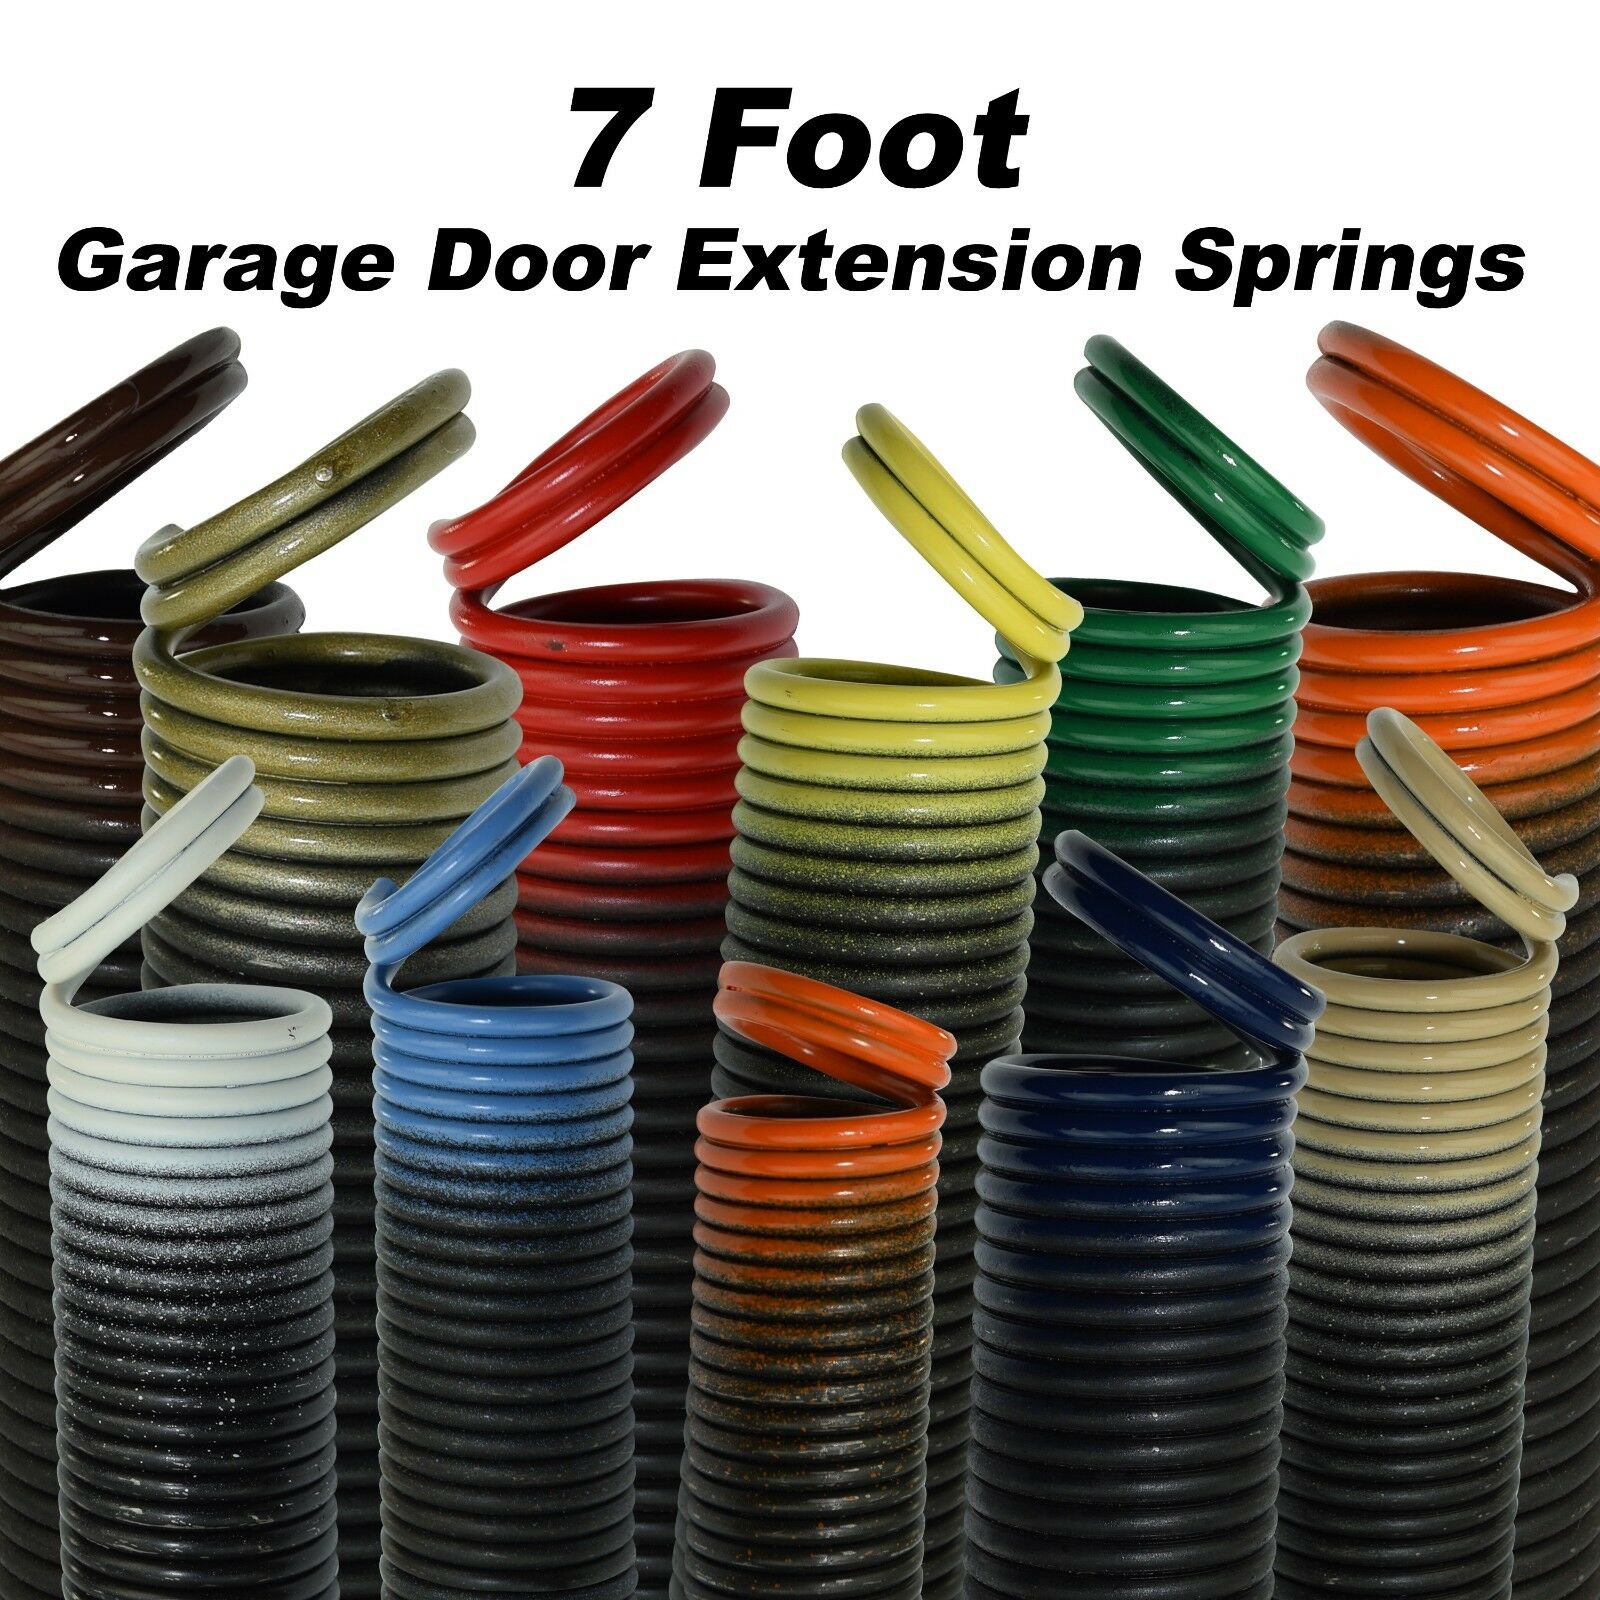 Garage Door Extension Springs For 7 Foot Tall Garage Door